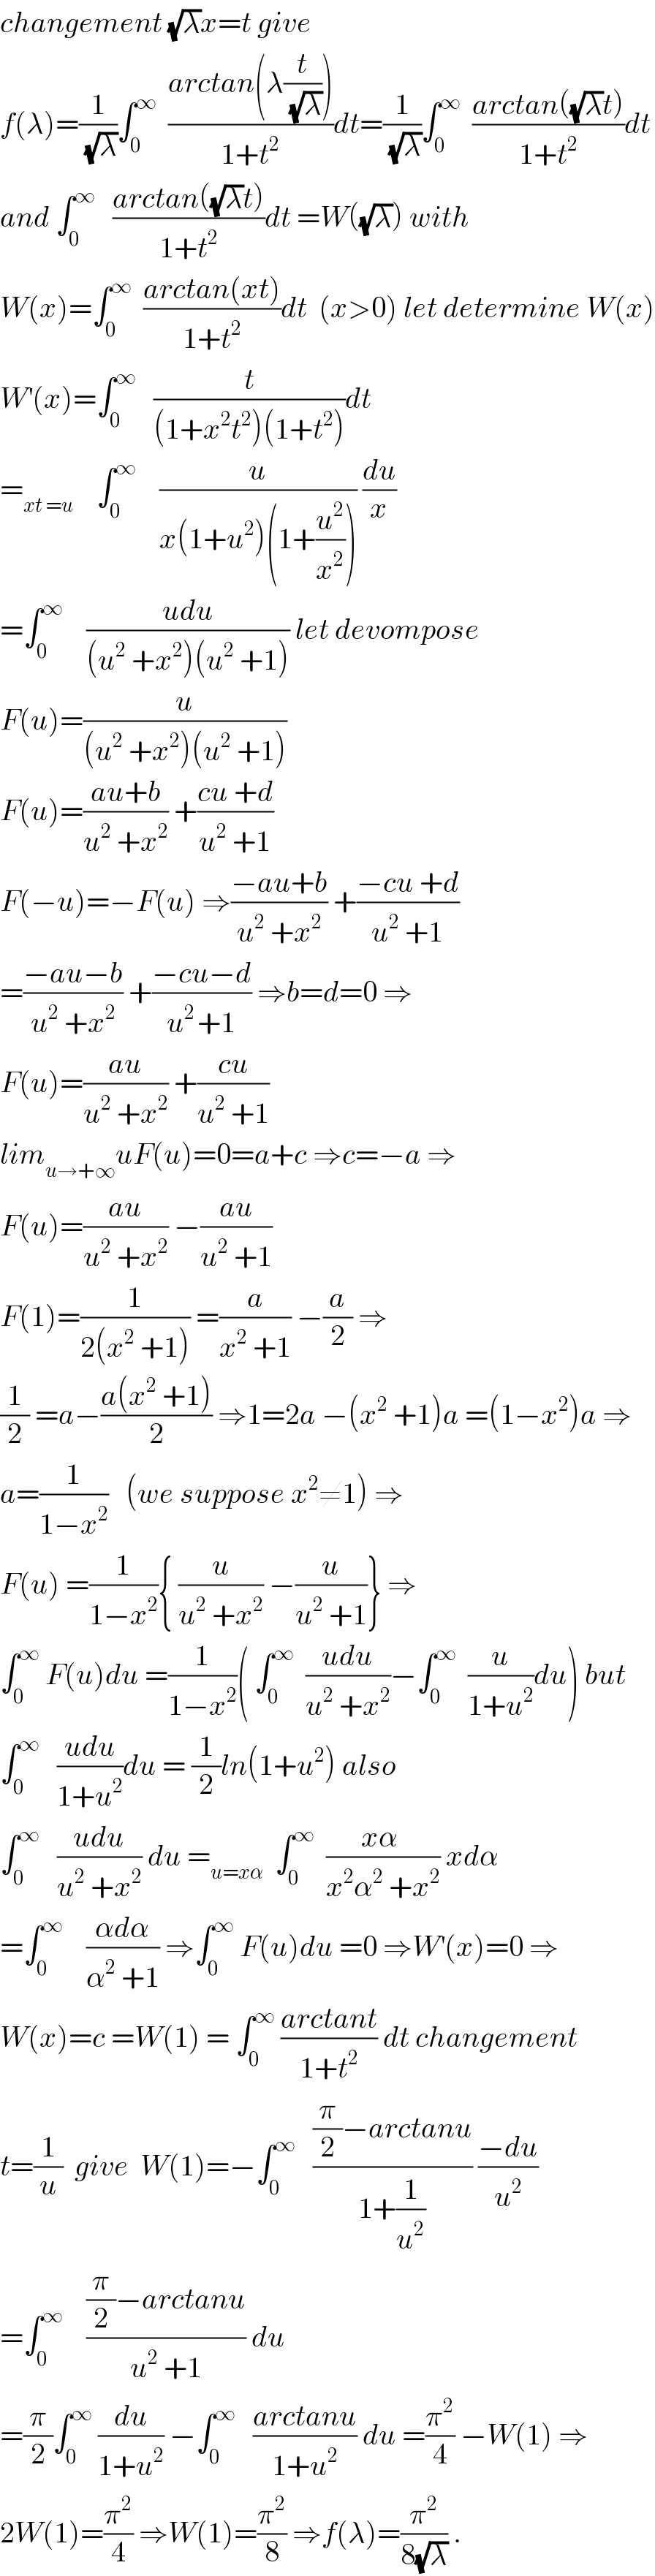 changement (√λ)x=t give  f(λ)=(1/(√λ))∫_0 ^∞   ((arctan(λ(t/(√λ))))/(1+t^2 ))dt=(1/(√λ))∫_0 ^∞   ((arctan((√λ)t))/(1+t^2 ))dt  and ∫_0 ^∞    ((arctan((√λ)t))/(1+t^2 ))dt =W((√λ)) with  W(x)=∫_0 ^∞   ((arctan(xt))/(1+t^2 ))dt  (x>0) let determine W(x)  W^′ (x)=∫_0 ^∞    (t/((1+x^2 t^2 )(1+t^2 )))dt  =_(xt =u)     ∫_0 ^∞     (u/(x(1+u^2 )(1+(u^2 /x^2 )))) (du/x)  =∫_0 ^∞     ((udu)/((u^2  +x^2 )(u^2  +1))) let devompose  F(u)=(u/((u^2  +x^2 )(u^2  +1)))  F(u)=((au+b)/(u^2  +x^2 )) +((cu +d)/(u^2  +1))  F(−u)=−F(u) ⇒((−au+b)/(u^2  +x^2 )) +((−cu +d)/(u^2  +1))  =((−au−b)/(u^2  +x^2 )) +((−cu−d)/(u^(2 ) +1)) ⇒b=d=0 ⇒  F(u)=((au)/(u^2  +x^2 )) +((cu)/(u^2  +1))  lim_(u→+∞) uF(u)=0=a+c ⇒c=−a ⇒  F(u)=((au)/(u^2  +x^2 )) −((au)/(u^2  +1))  F(1)=(1/(2(x^2  +1))) =(a/(x^2  +1)) −(a/2) ⇒  (1/2) =a−((a(x^2  +1))/2) ⇒1=2a −(x^2  +1)a =(1−x^2 )a ⇒  a=(1/(1−x^2 ))   (we suppose x^2 ≠1) ⇒  F(u) =(1/(1−x^2 )){ (u/(u^2  +x^2 )) −(u/(u^2  +1))} ⇒  ∫_0 ^∞  F(u)du =(1/(1−x^2 ))( ∫_0 ^∞   ((udu)/(u^2  +x^2 ))−∫_0 ^∞   (u/(1+u^2 ))du) but  ∫_0 ^∞    ((udu)/(1+u^2 ))du = (1/2)ln(1+u^2 ) also  ∫_0 ^∞    ((udu)/(u^2  +x^2 )) du =_(u=xα)   ∫_0 ^∞   ((xα )/(x^2 α^2  +x^2 )) xdα  =∫_0 ^∞     ((αdα)/(α^2  +1)) ⇒∫_0 ^∞  F(u)du =0 ⇒W^′ (x)=0 ⇒  W(x)=c =W(1) = ∫_0 ^∞  ((arctant)/(1+t^2 )) dt changement  t=(1/u)  give  W(1)=−∫_0 ^∞    (((π/2)−arctanu)/(1+(1/u^2 ))) ((−du)/u^2 )  =∫_0 ^∞     (((π/2)−arctanu)/(u^2  +1)) du  =(π/2)∫_0 ^∞  (du/(1+u^2 )) −∫_0 ^∞    ((arctanu)/(1+u^2 )) du =(π^2 /4) −W(1) ⇒  2W(1)=(π^2 /4) ⇒W(1)=(π^2 /8) ⇒f(λ)=(π^2 /(8(√λ))) .  